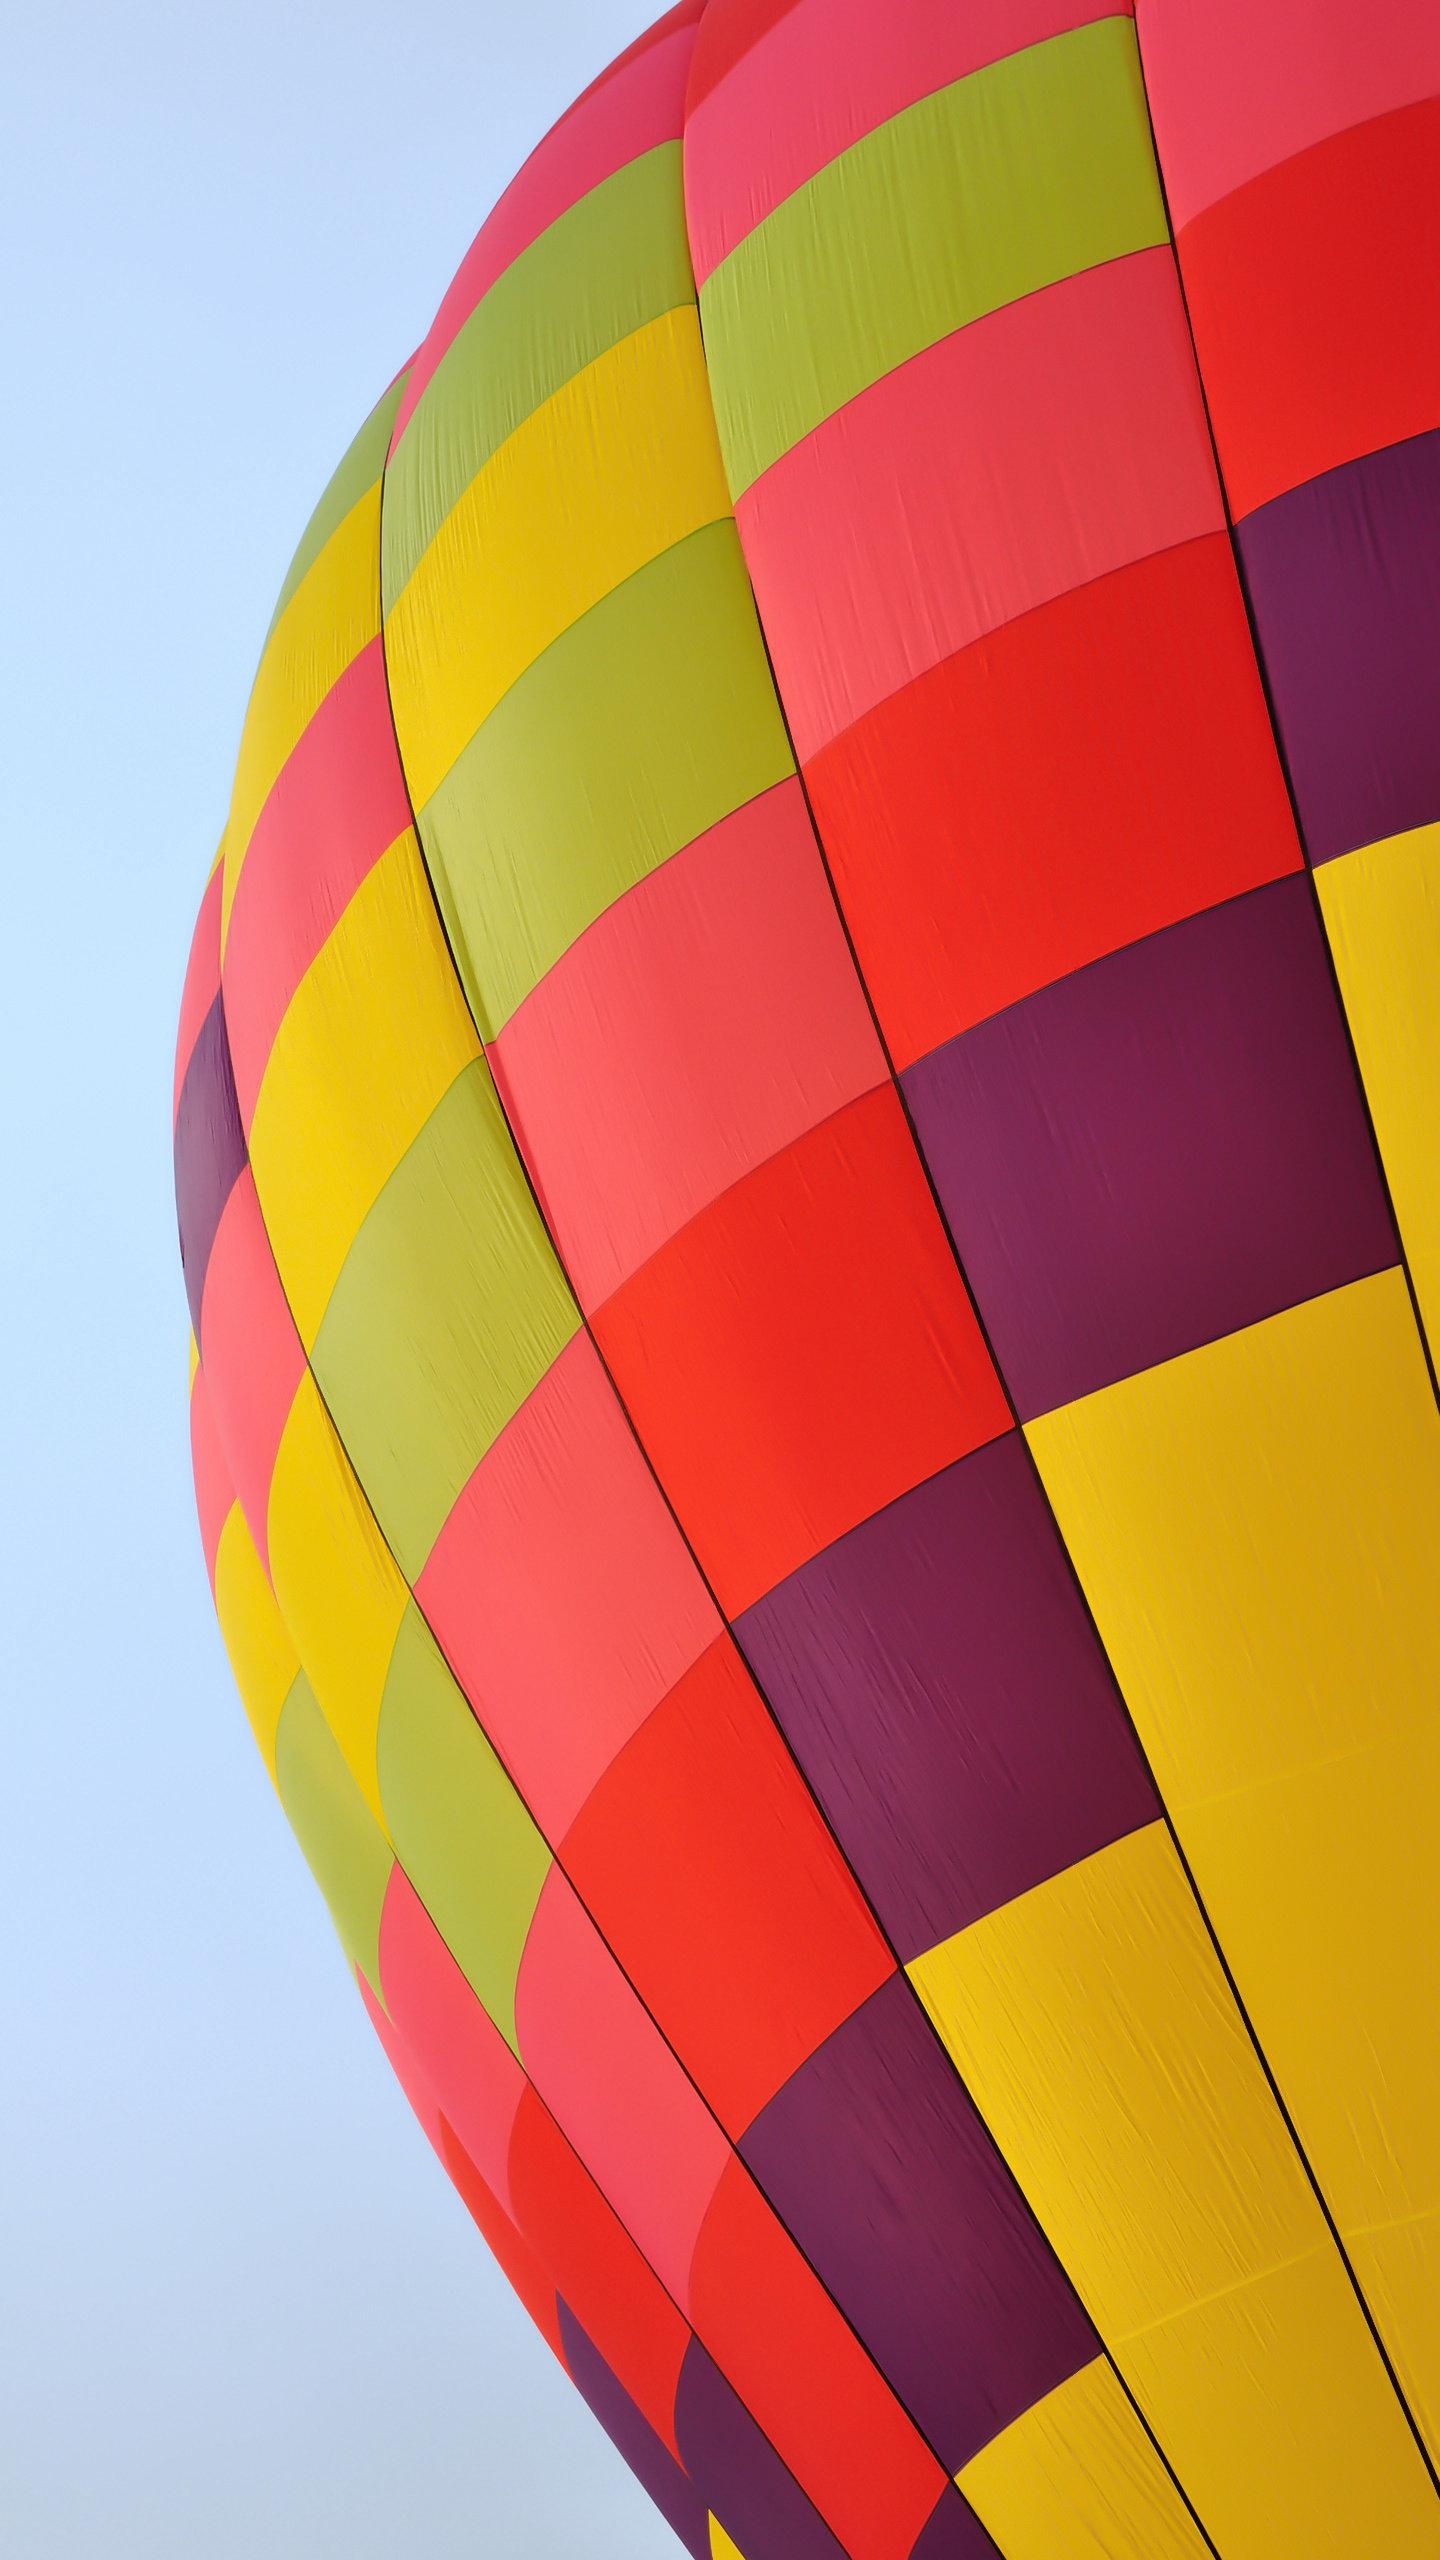 色彩鲜艳的热气球上起日起日落